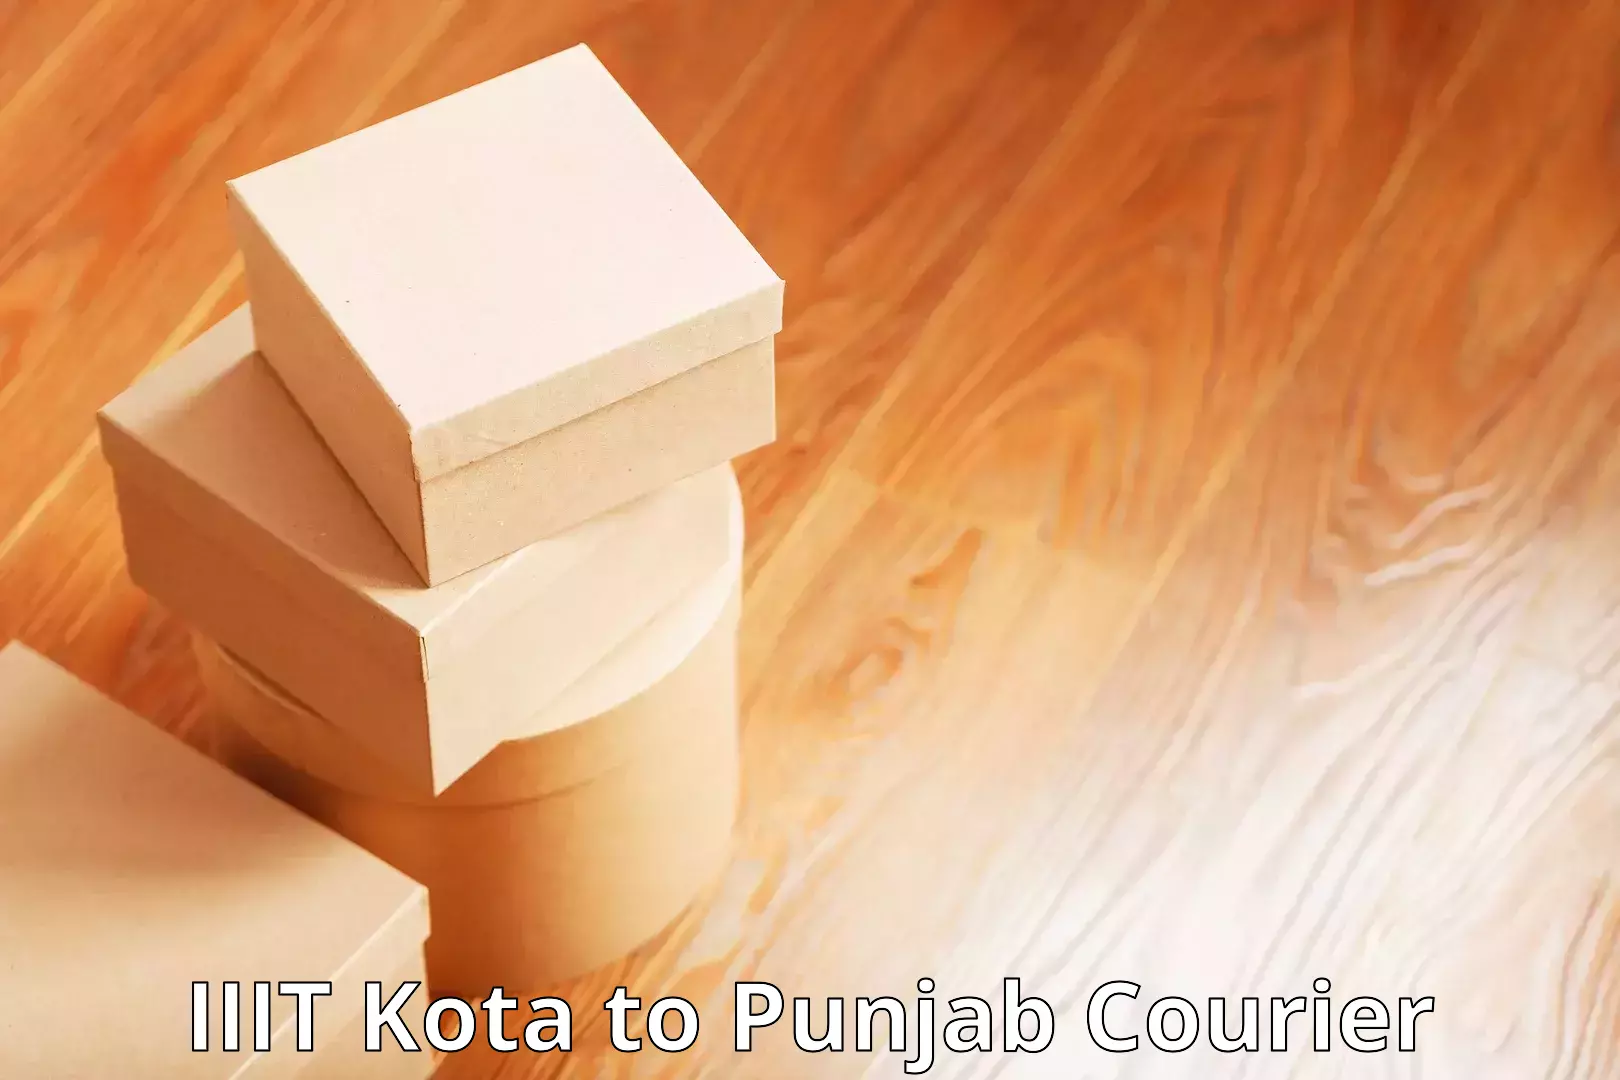 International courier rates IIIT Kota to Patti Tarn Tara